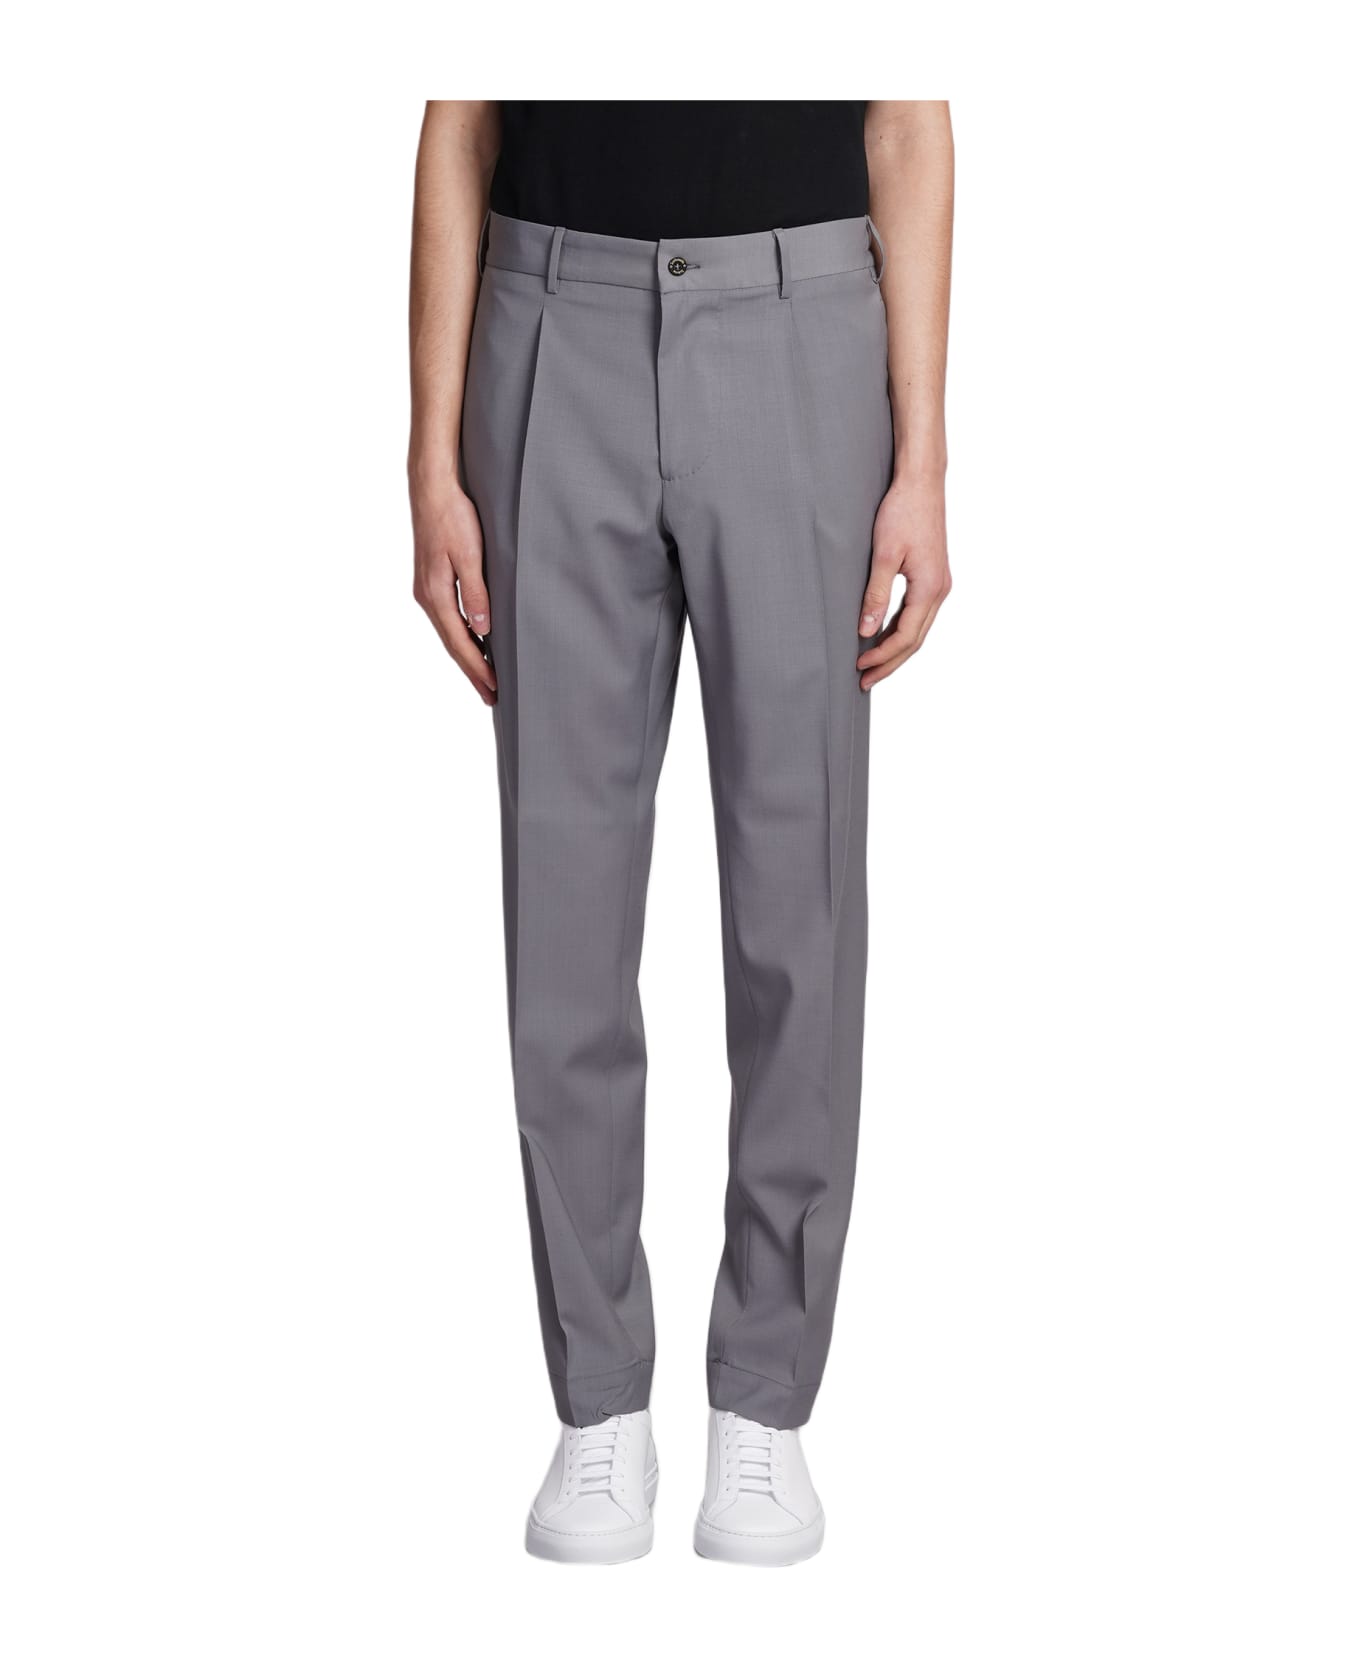 Santaniello Pants In Grey Polyester - grey ボトムス